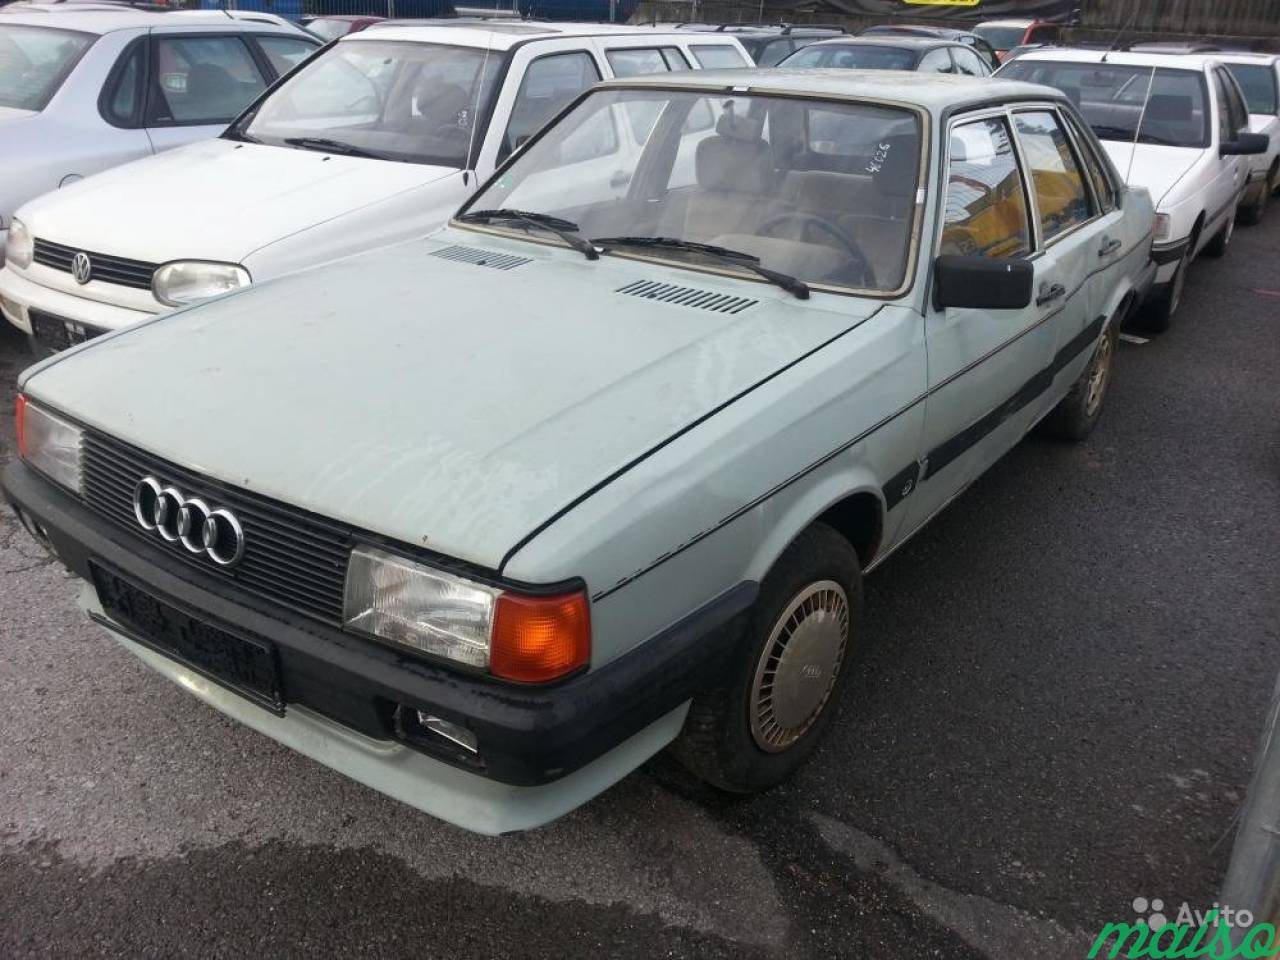 Запчасти на Audi 80 (B2) -1986 в Санкт-Петербурге. Фото 1